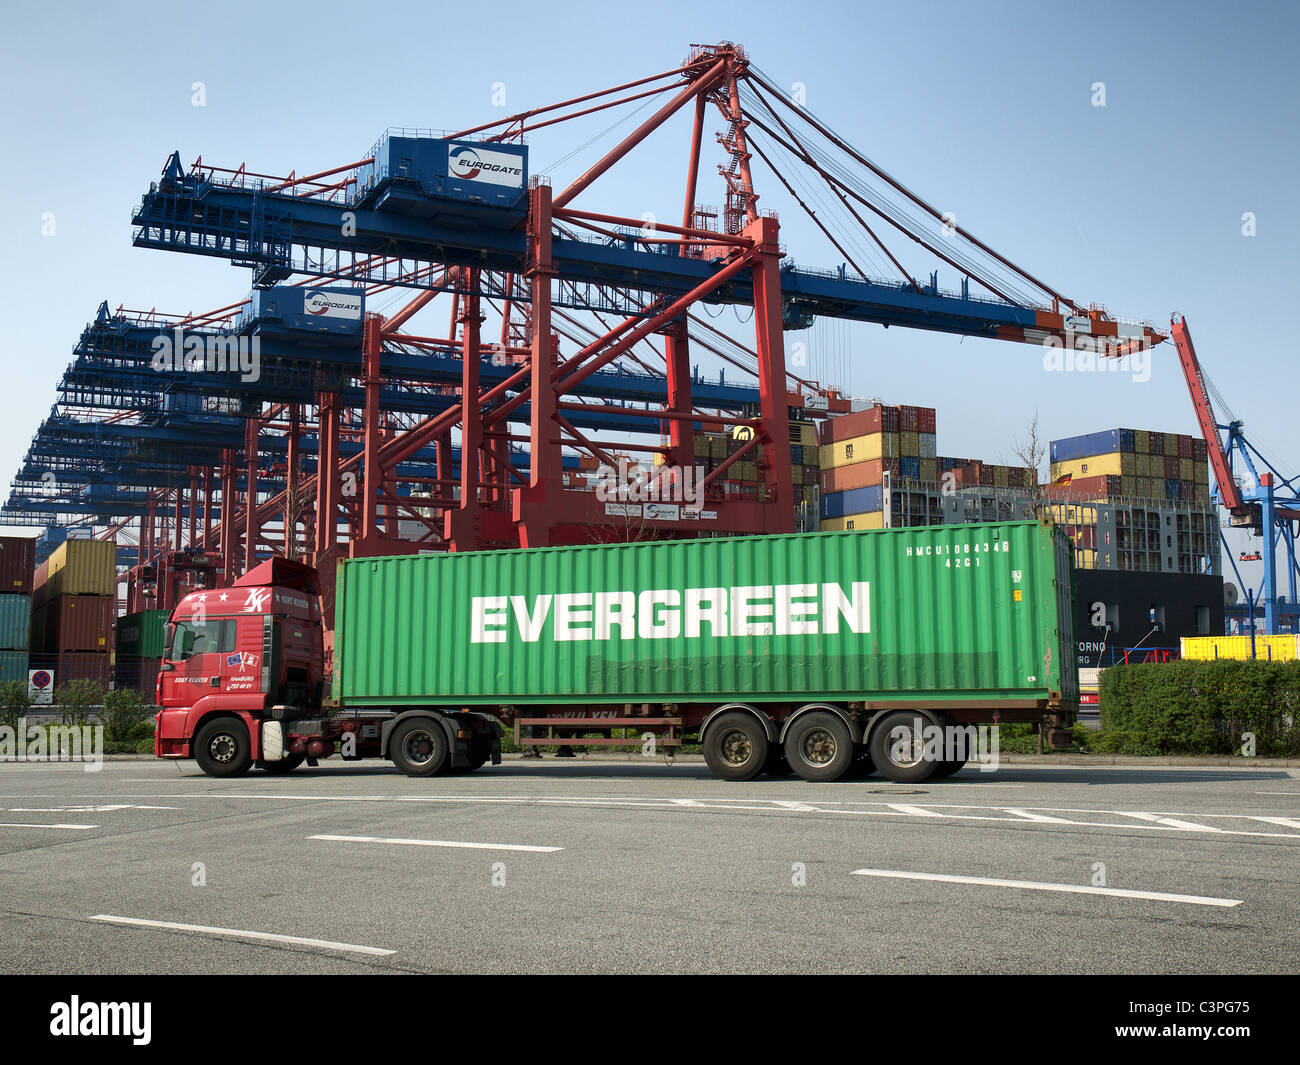 Chariot avec Evergreen 40' conteneur approchant le terminal à conteneurs Eurogate dans le port de Hambourg, Allemagne. Banque D'Images